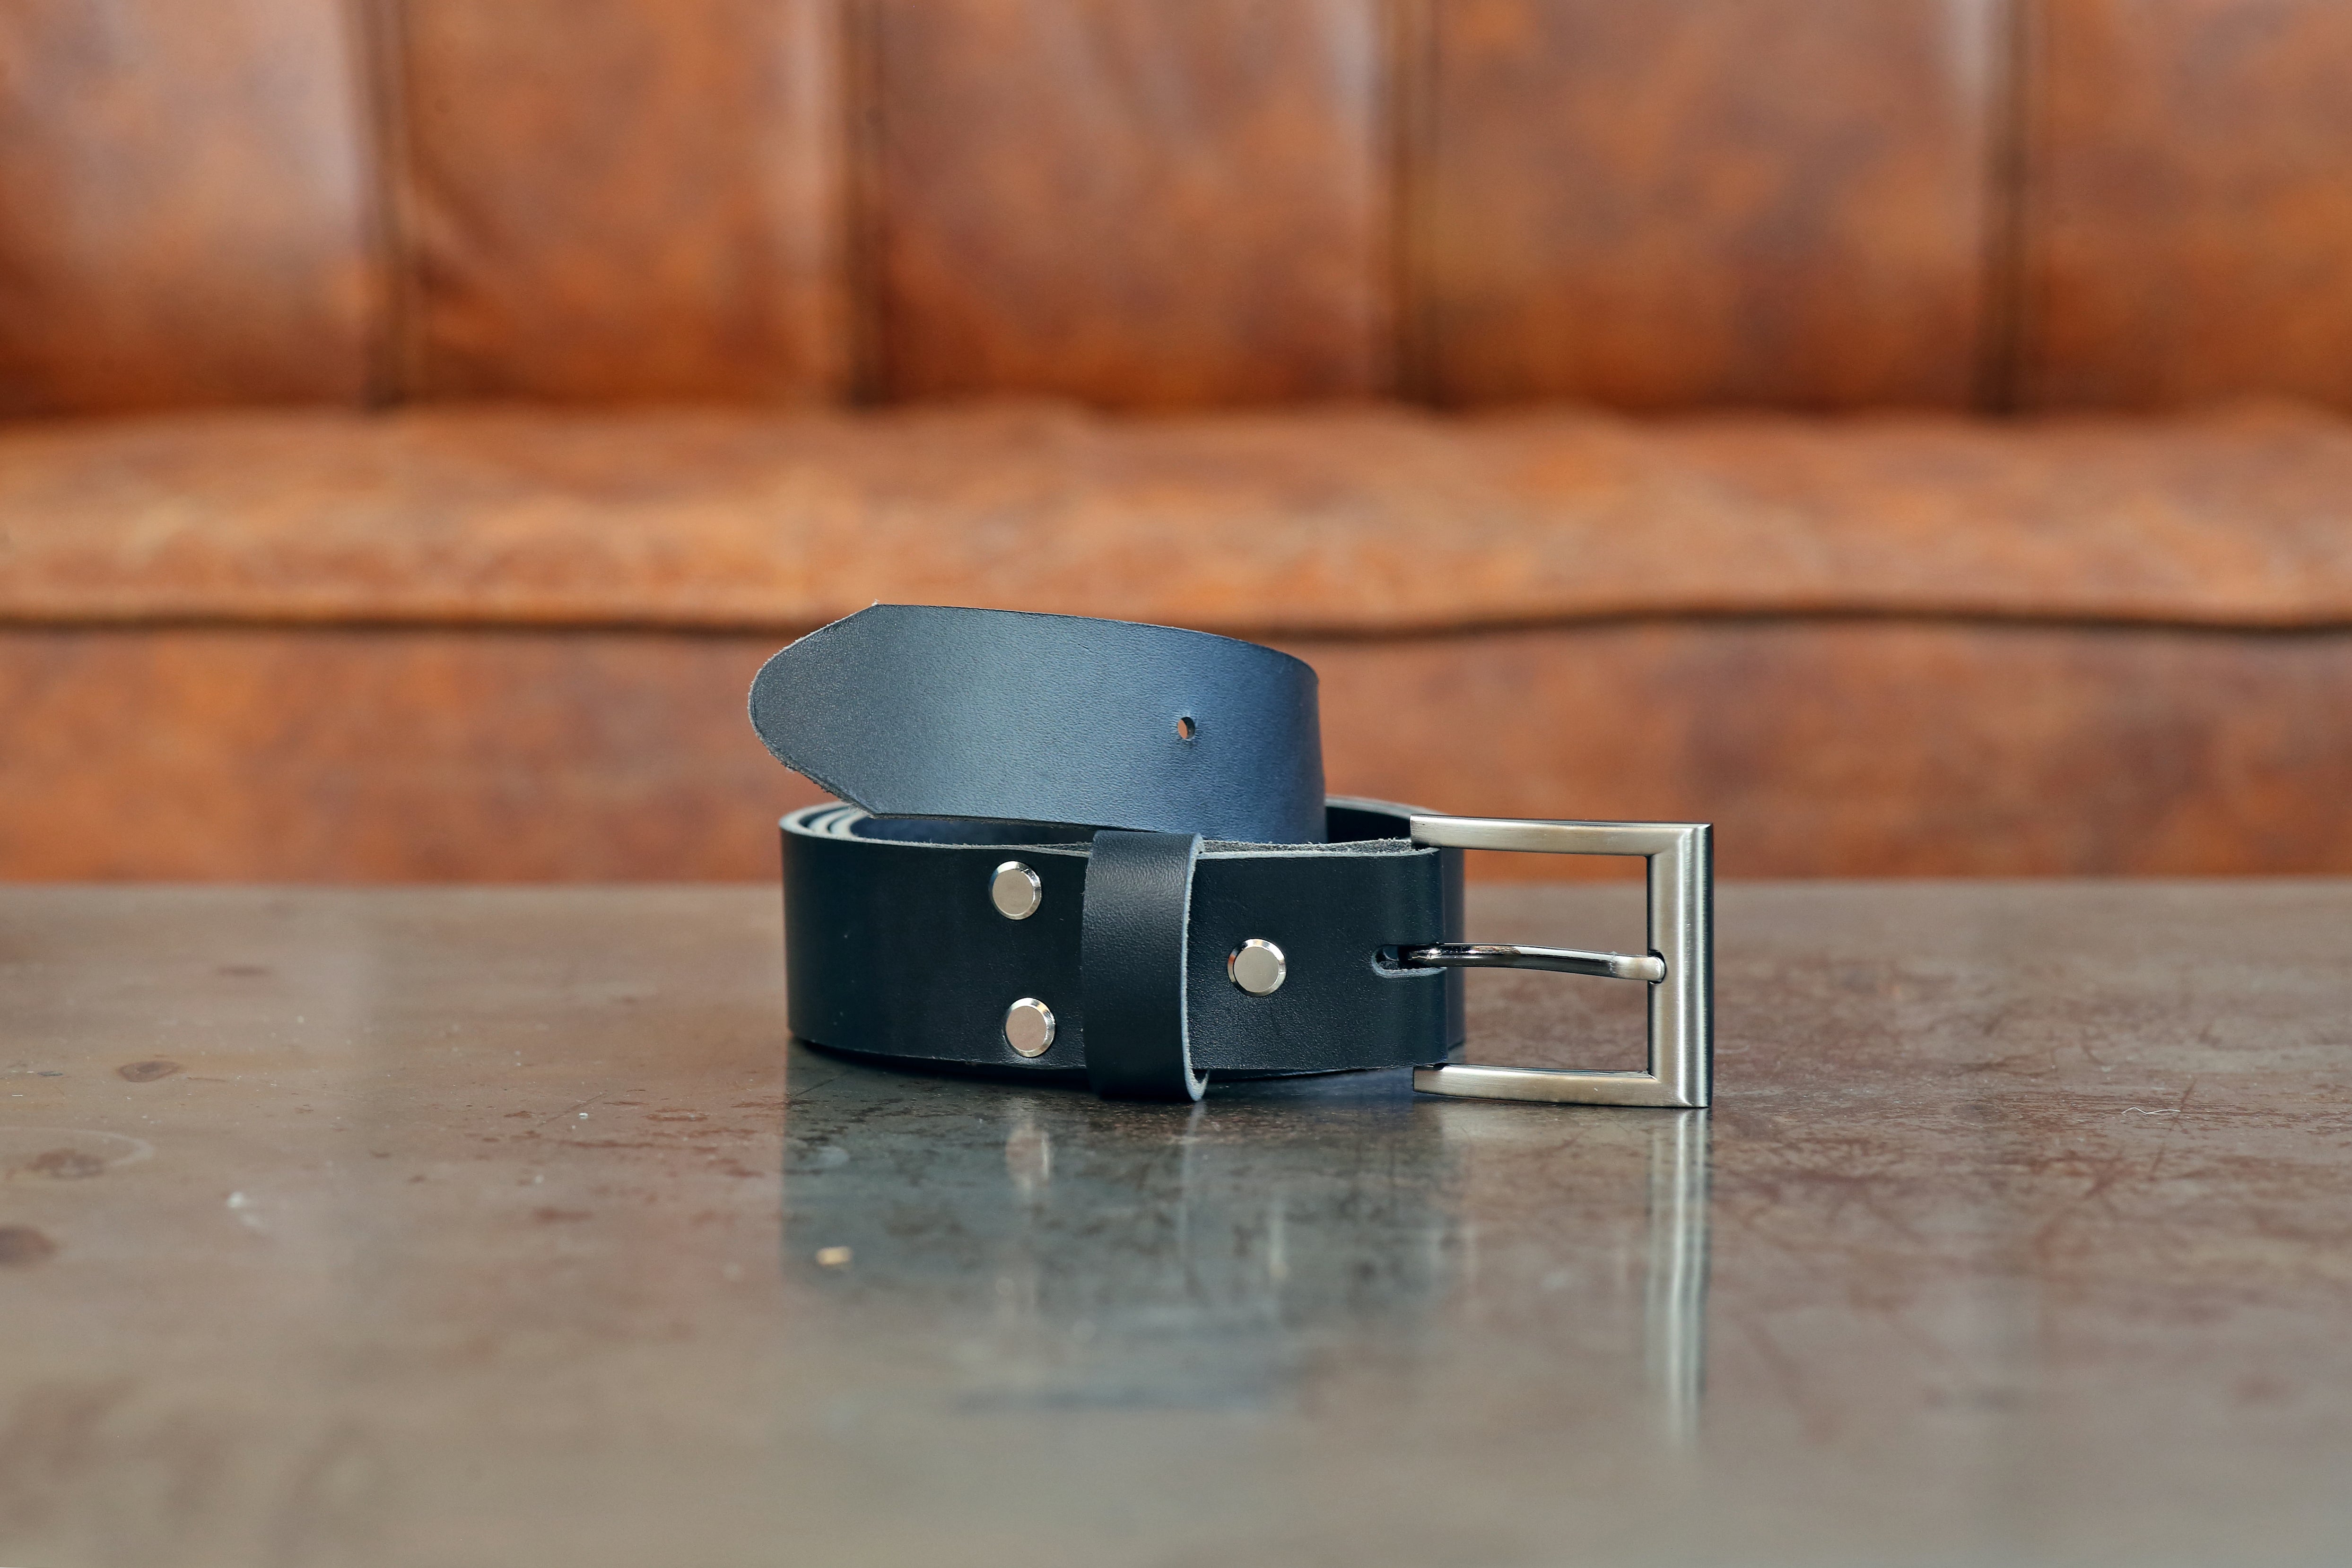 DIY Belt Kit for Custom Made Belt –